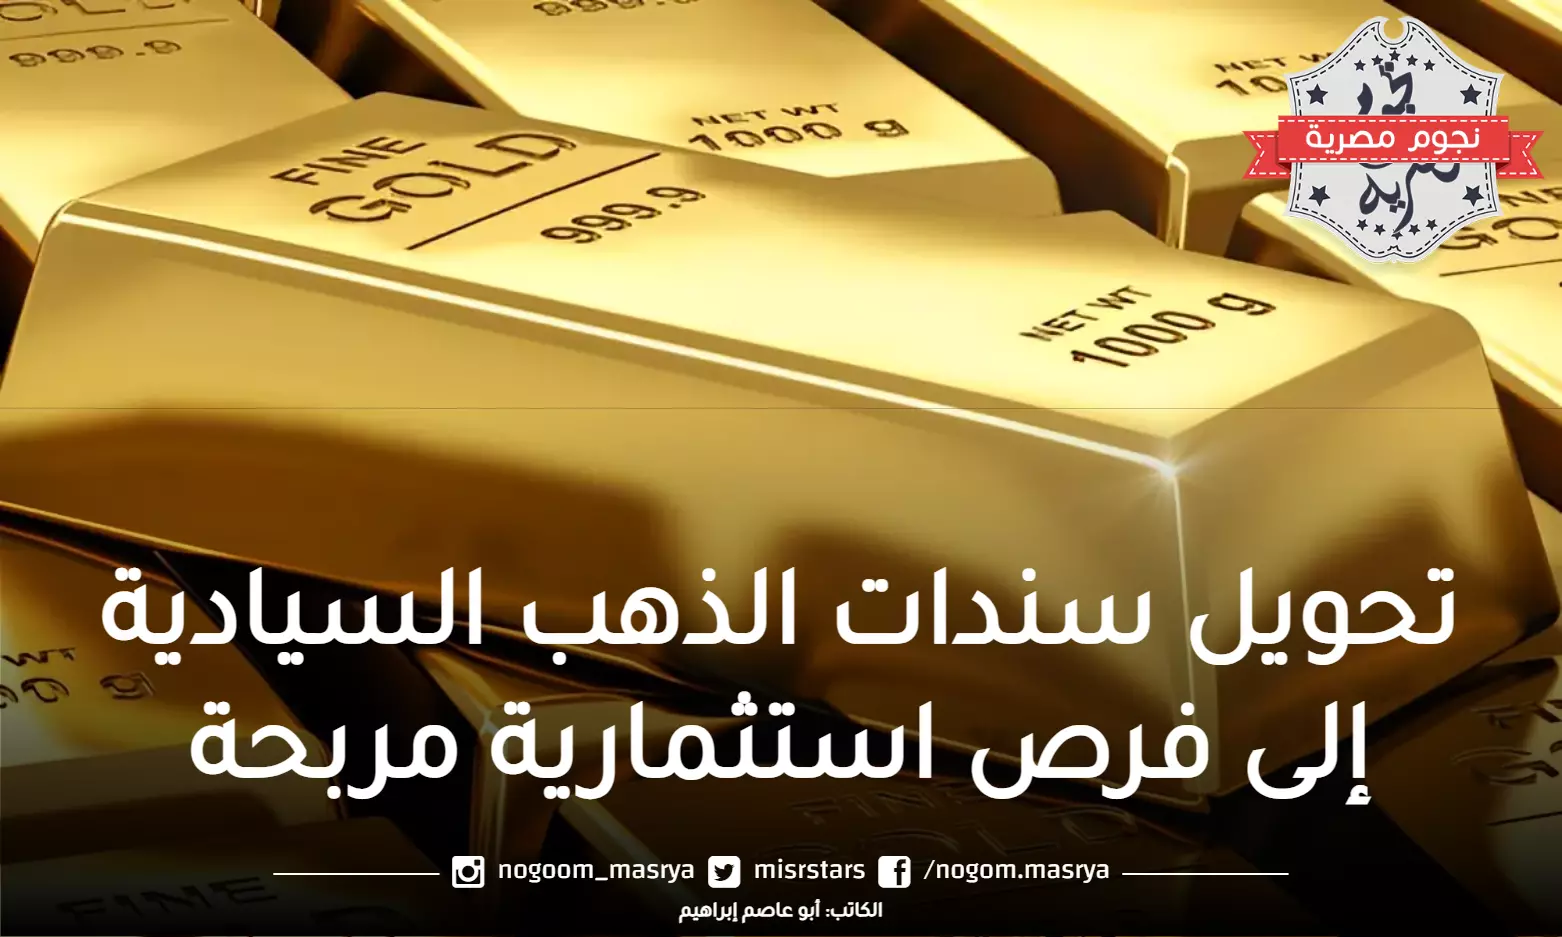 الذهب السيادي يجذب المستثمرين بسبب سنداته الرابحة